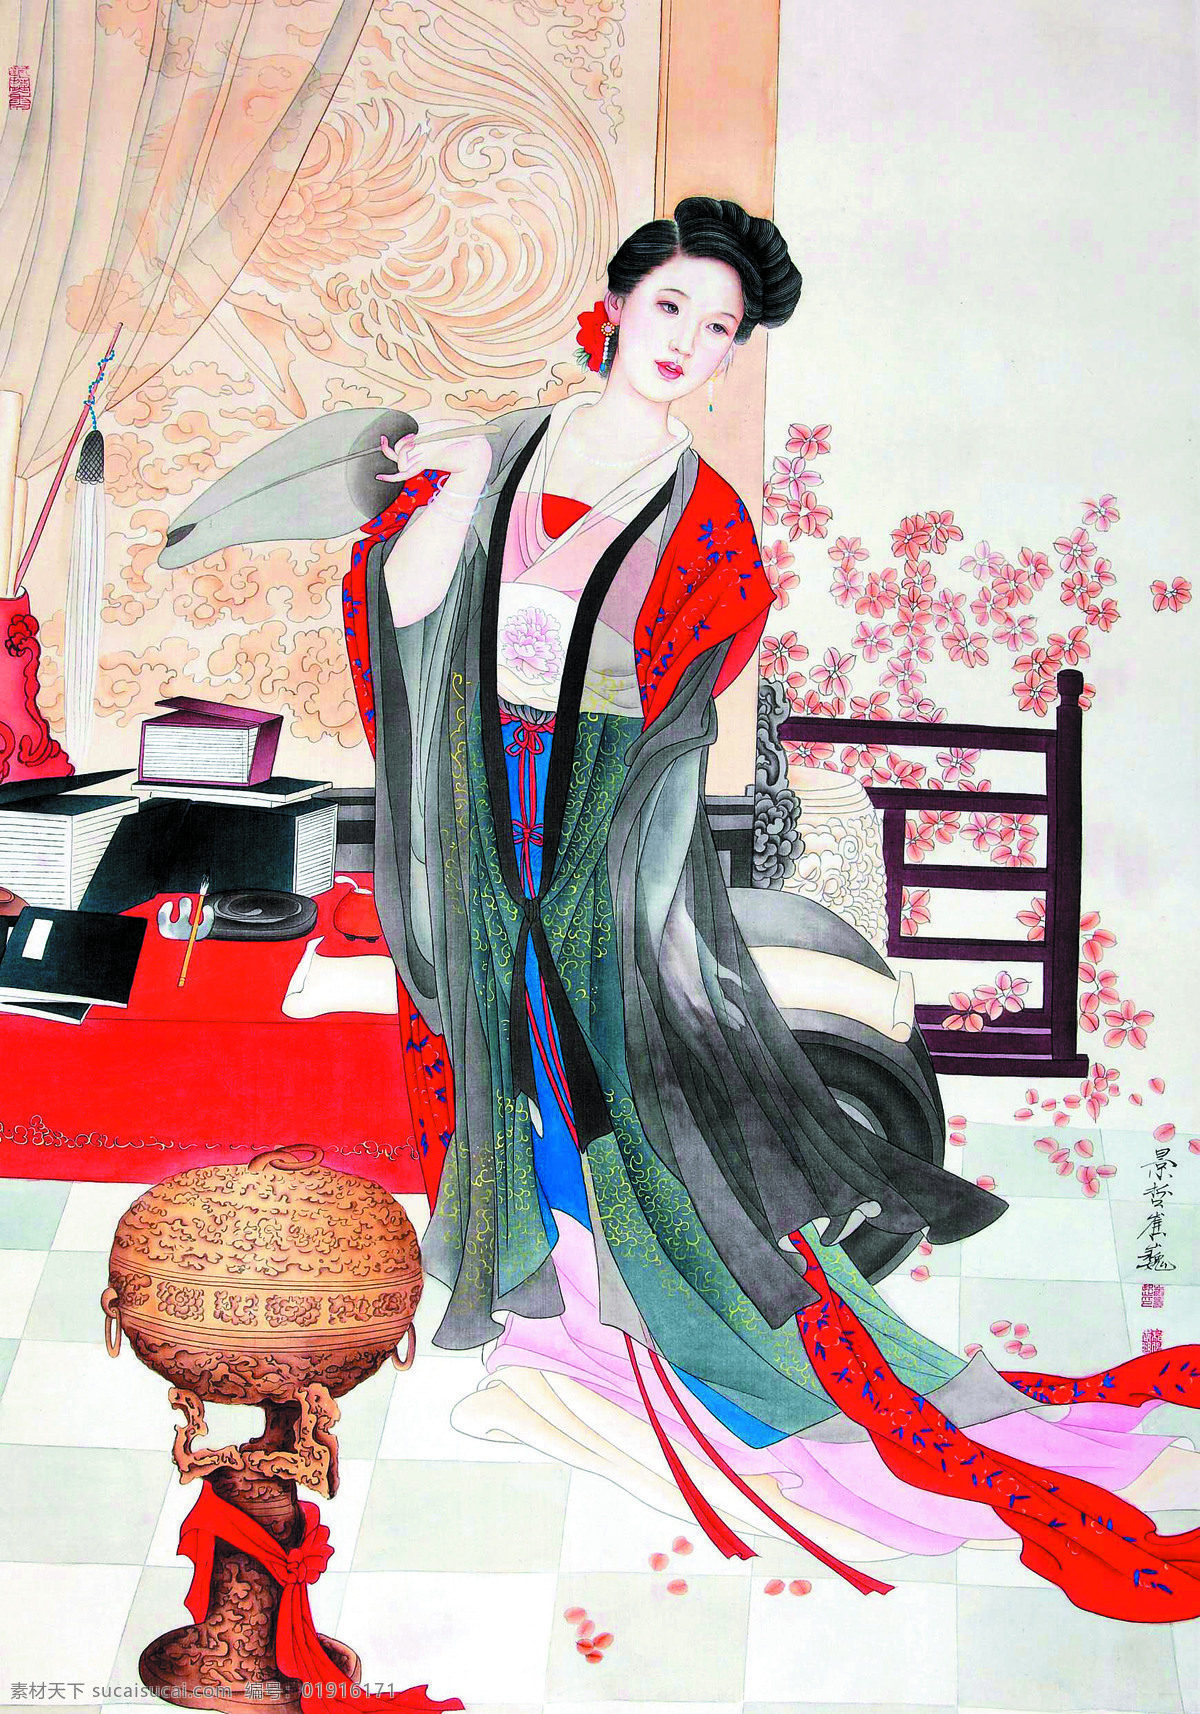 古代仕女图 美术 中国画 彩墨画 女人 仕女 丽人 才女 书房 红叶 文化艺术 绘画书法